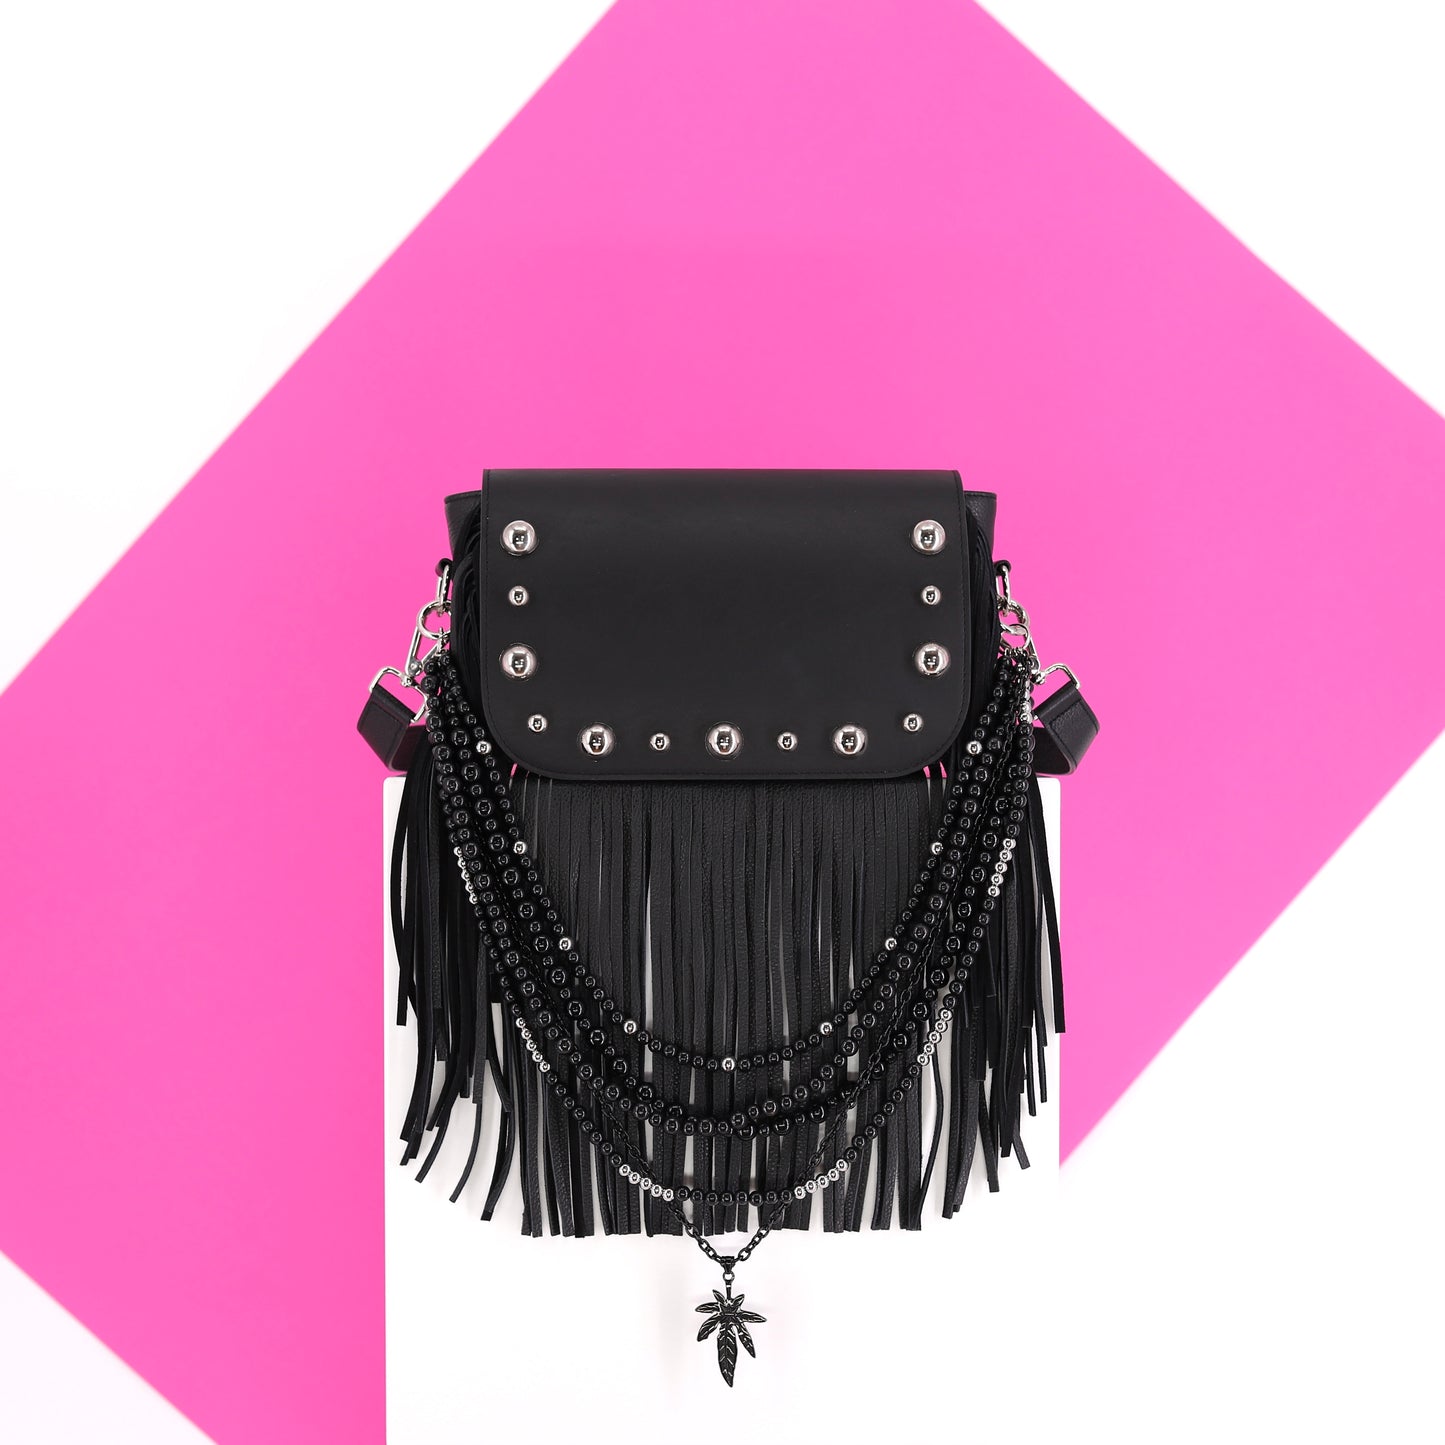 GABRIELLE Handtasche mit Fransen aus Leder in schwarz small